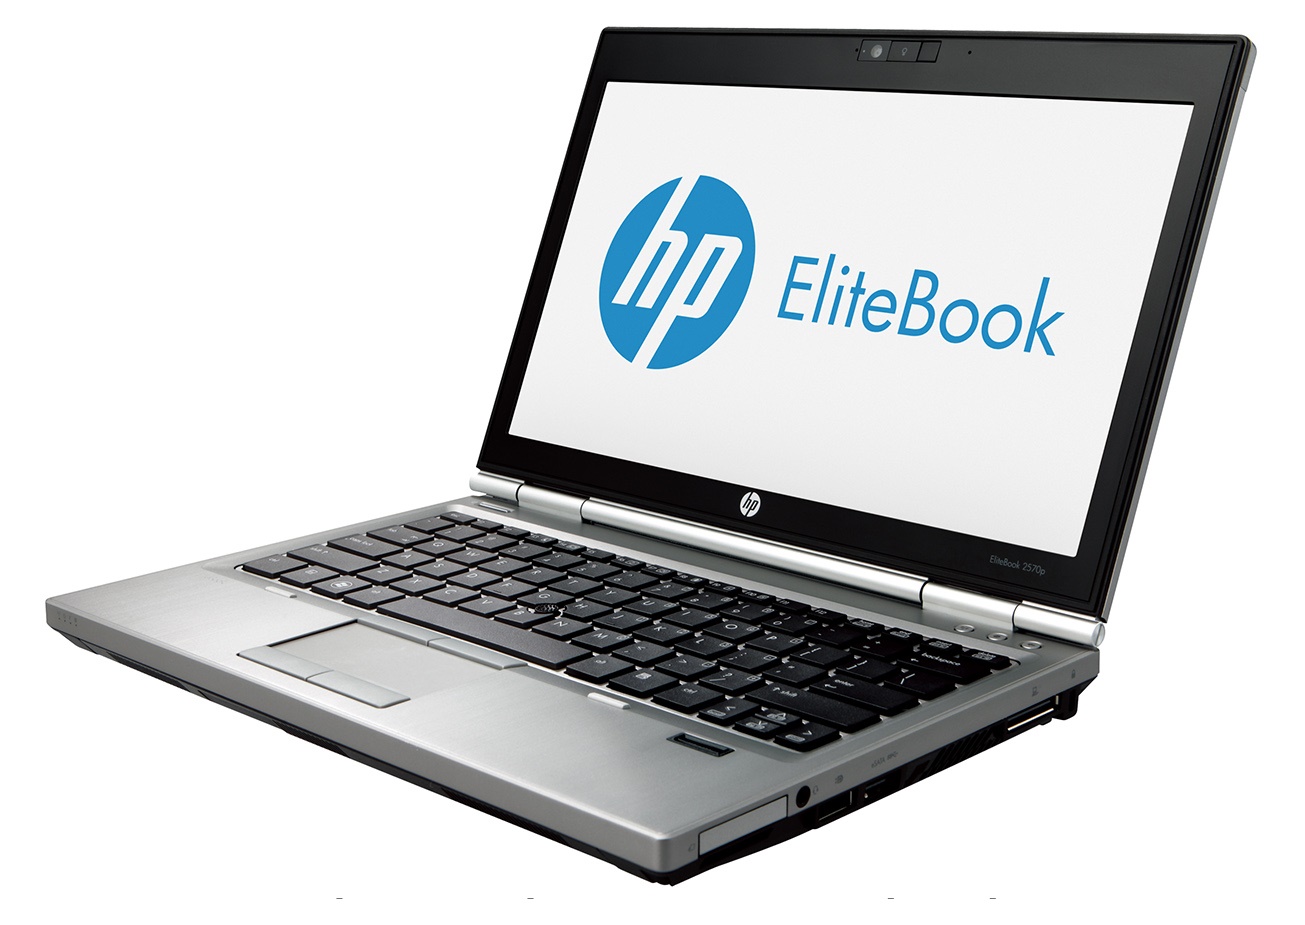 Laptop Hp EliteBook 2570p, Intel Core i5-3360M 2.80GHz, 4GB DDR3, 320GB SATA, DVD-RW, Webcam, 12.5 Inch